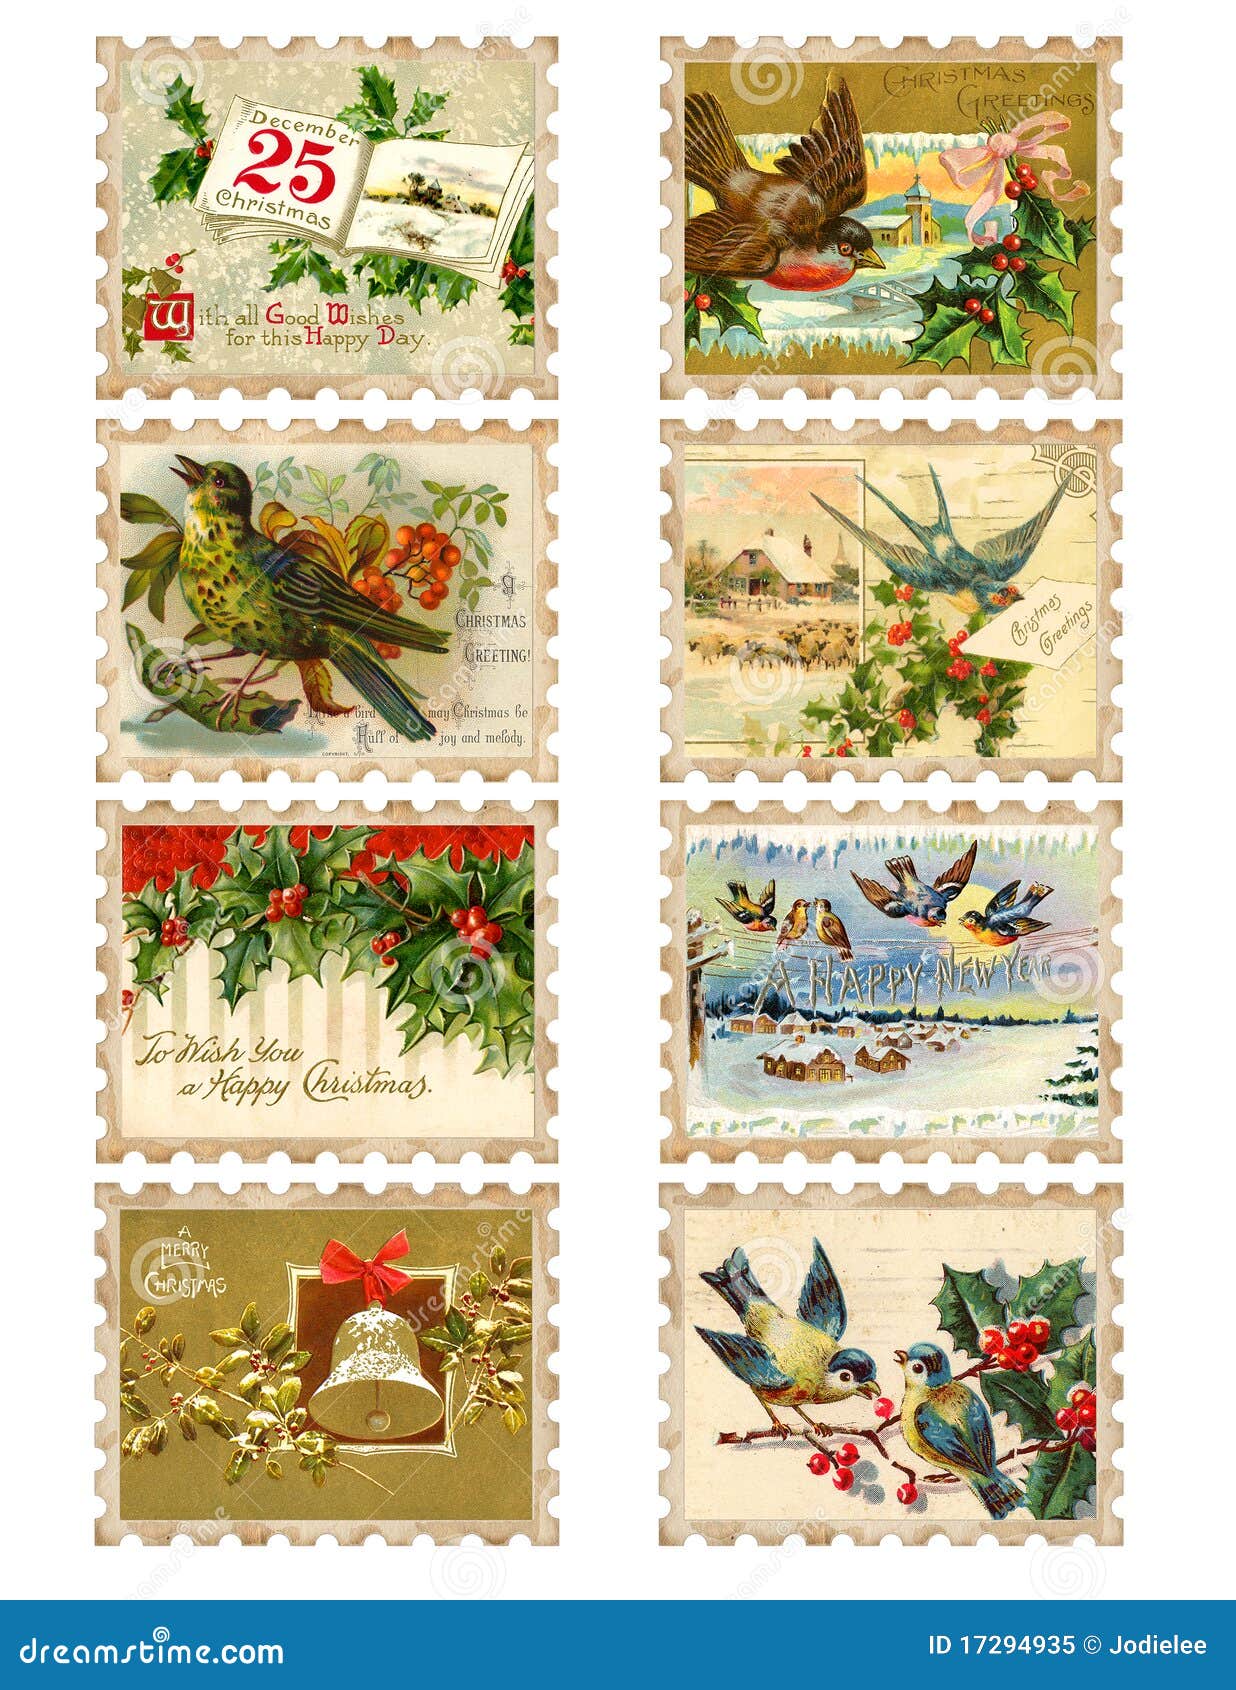 1930's Christmas Card Vintage Ephemeral Poinsettia Postage Stamp